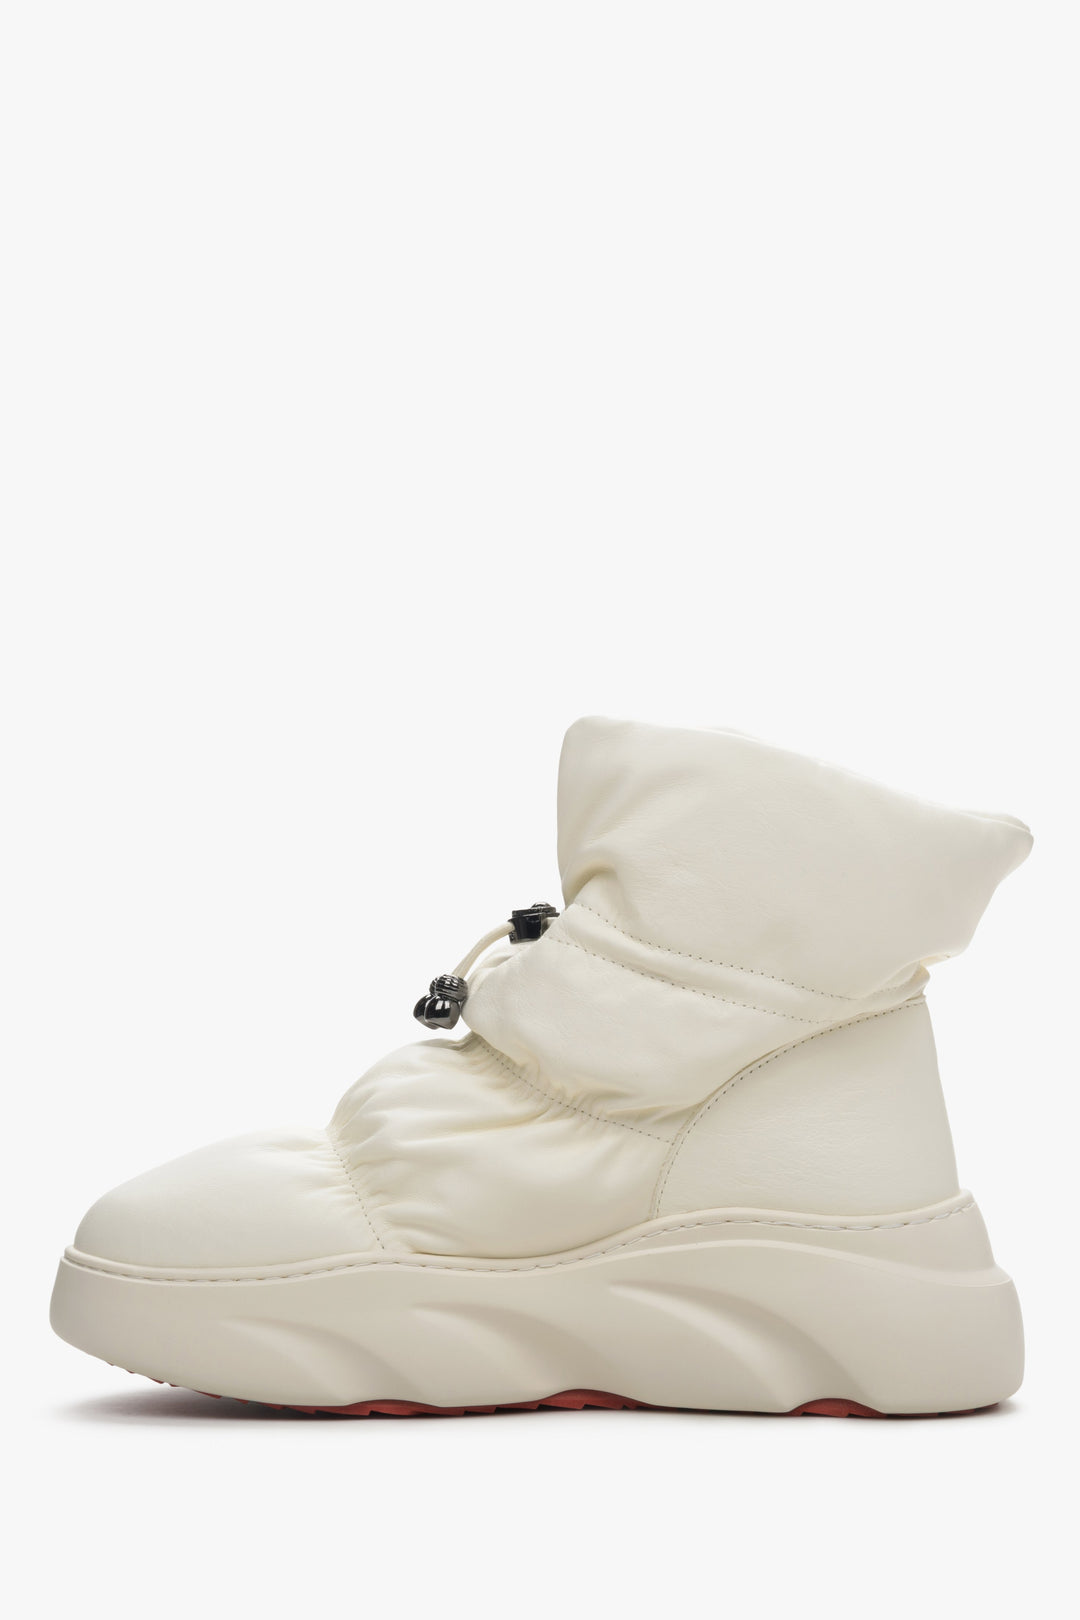 Women's light beige Estro leather snow boots - shoe profile.